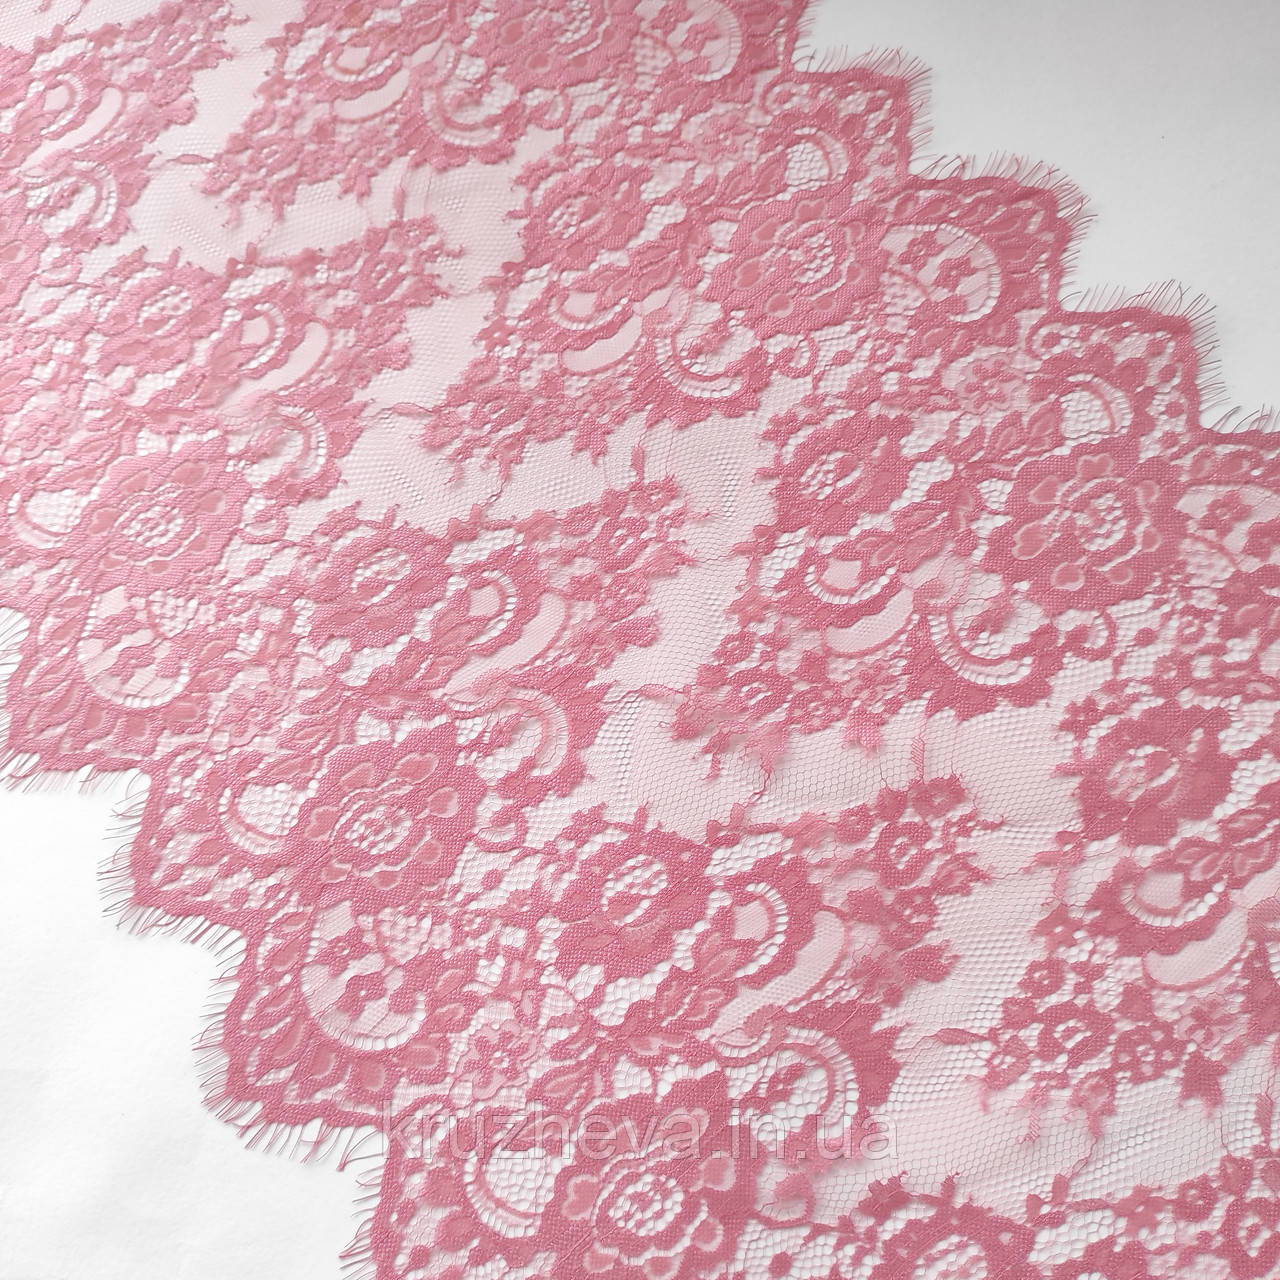 Ажурне французьке мереживо шантильї (з війками) рожевого кольору шириною 44 см, довжина купона 2,95 м.